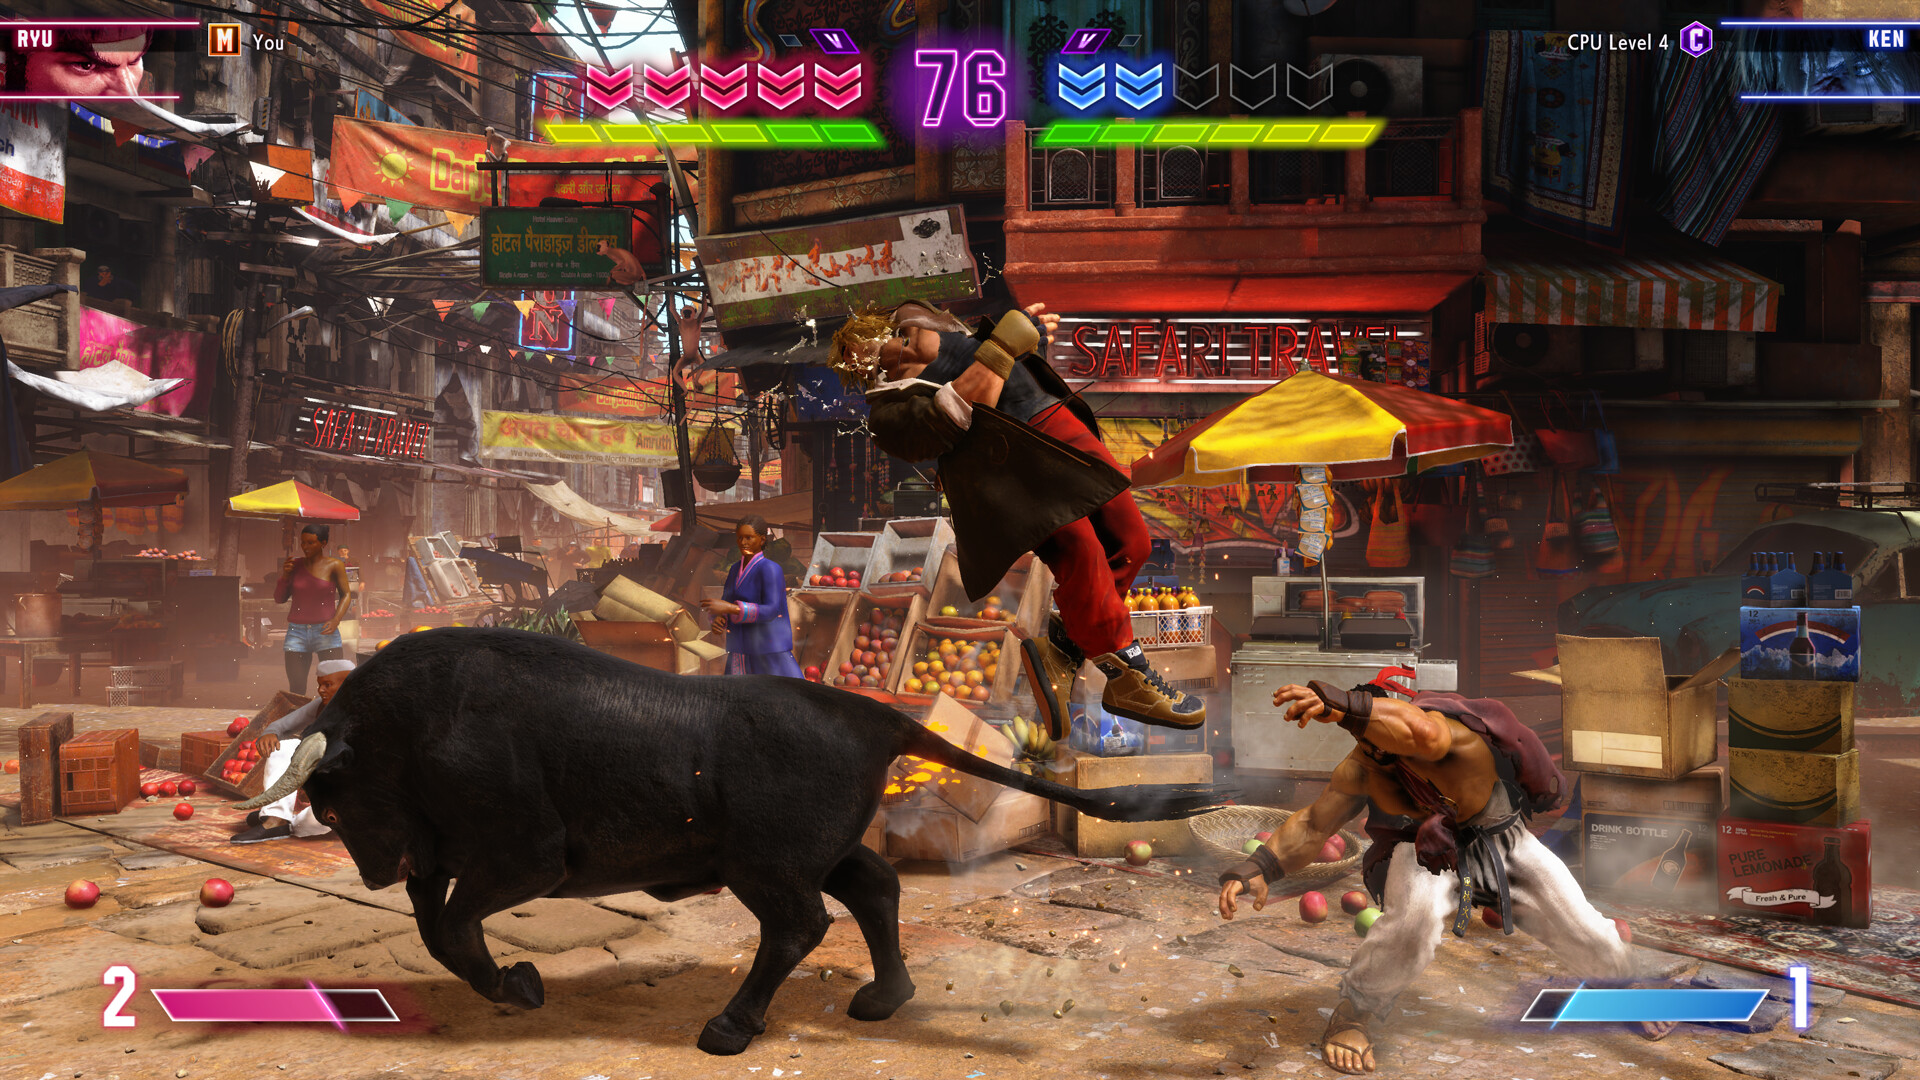 Street Fighter 6 Ultimate Edition + Preorder Bonus DLC Steam CD Keys